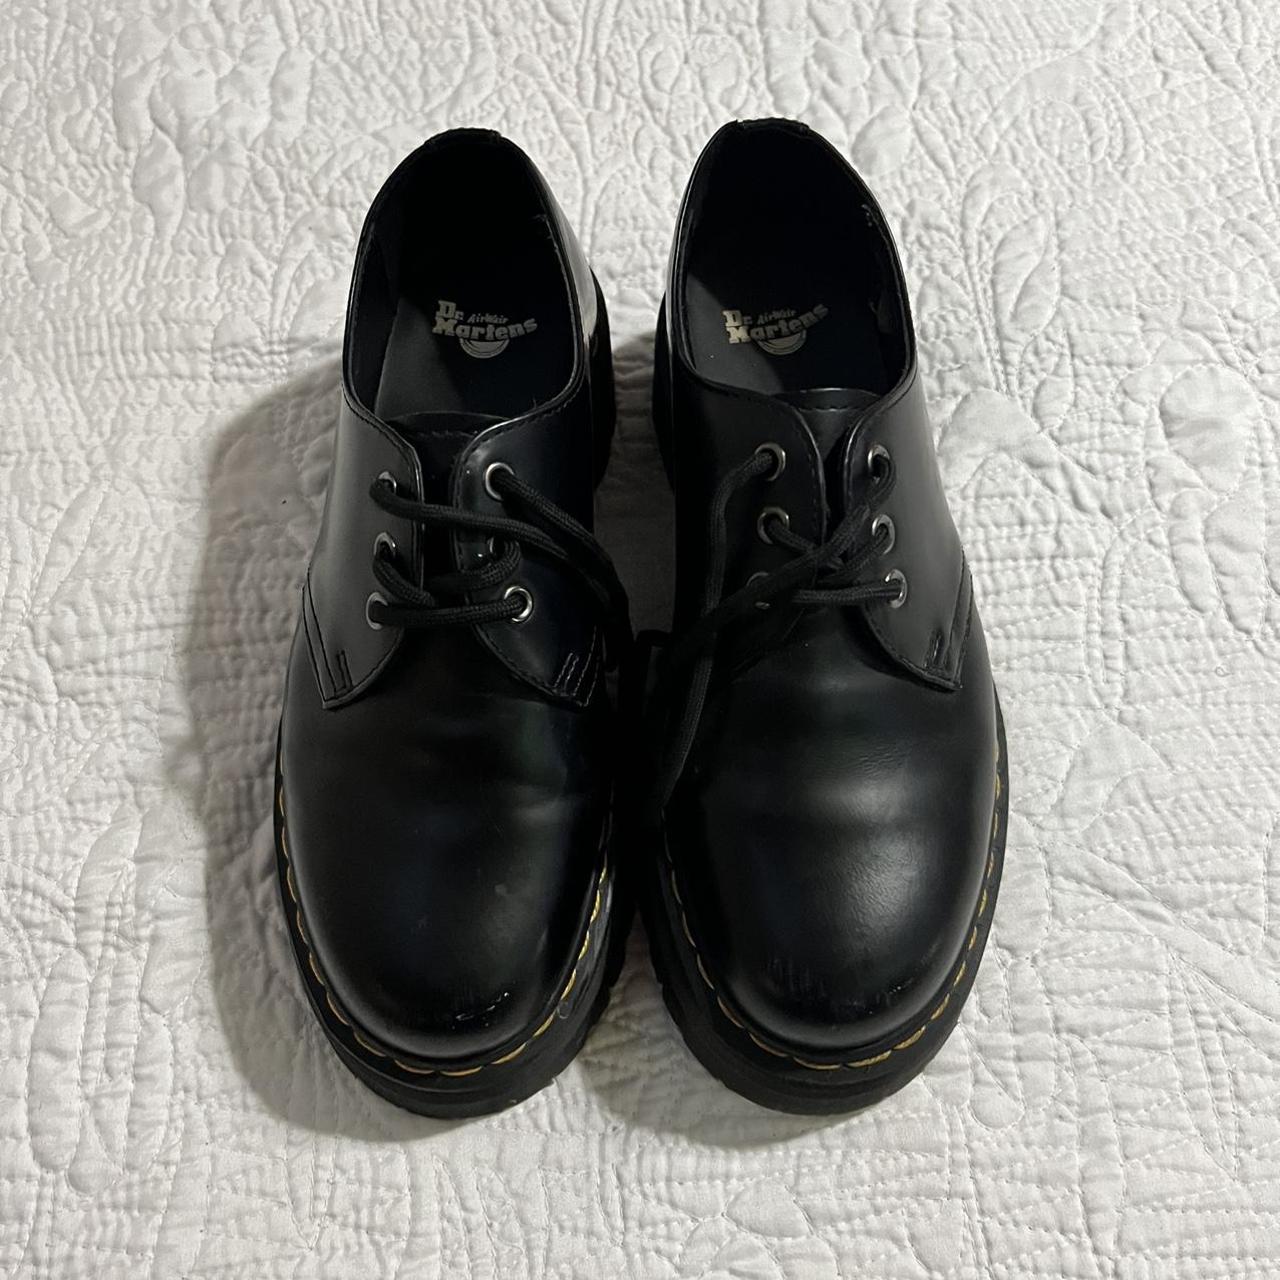 platform doc marten 1461 smooth leather shoes!!... - Depop